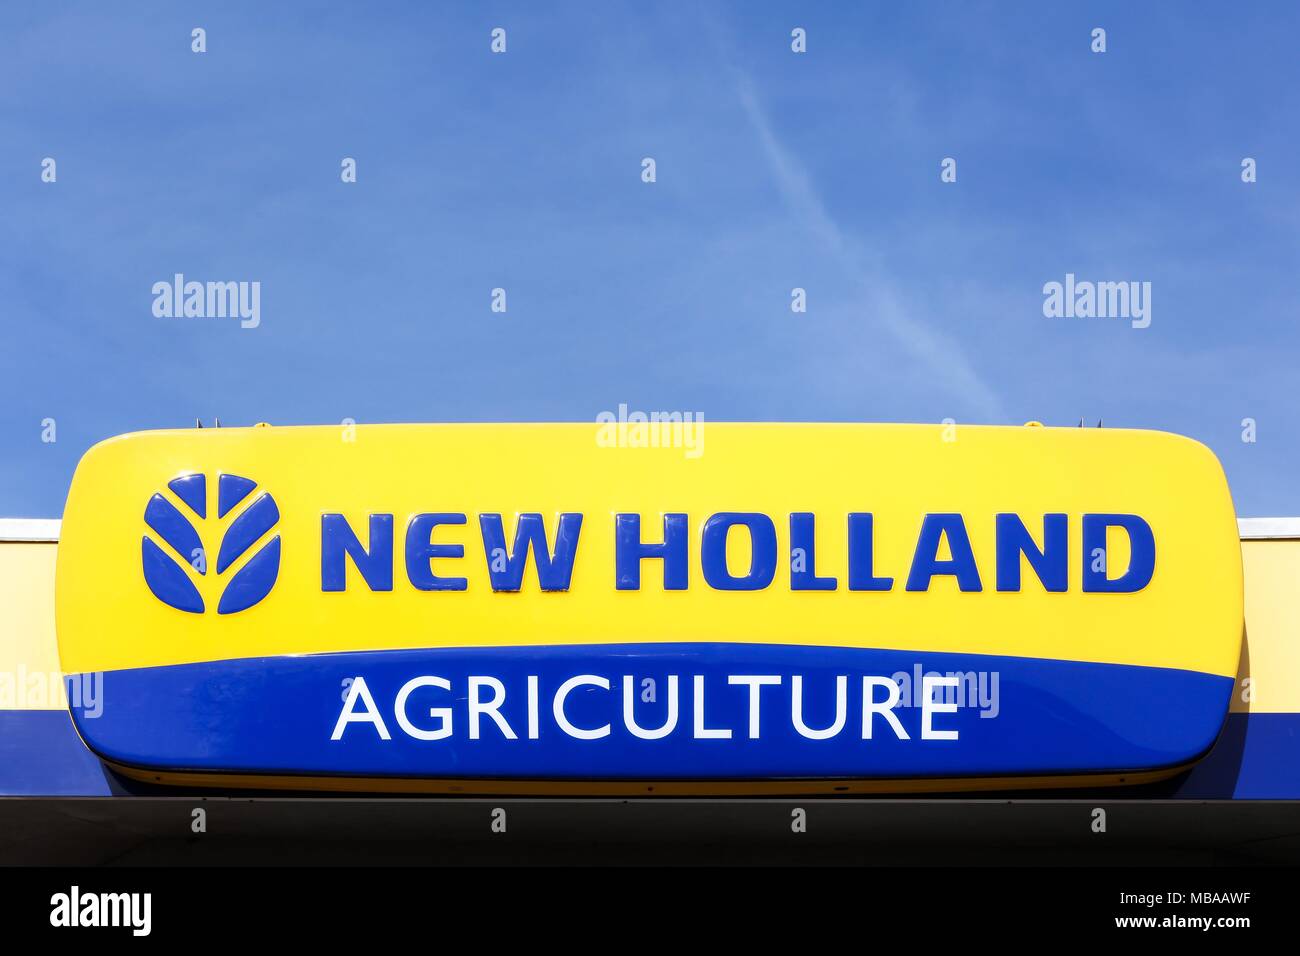 Norremarken, Danimarca - 25 Marzo 2017: New Holland Agriculture logo su una facciata. New Holland è una marca di attrezzature agricole Foto Stock